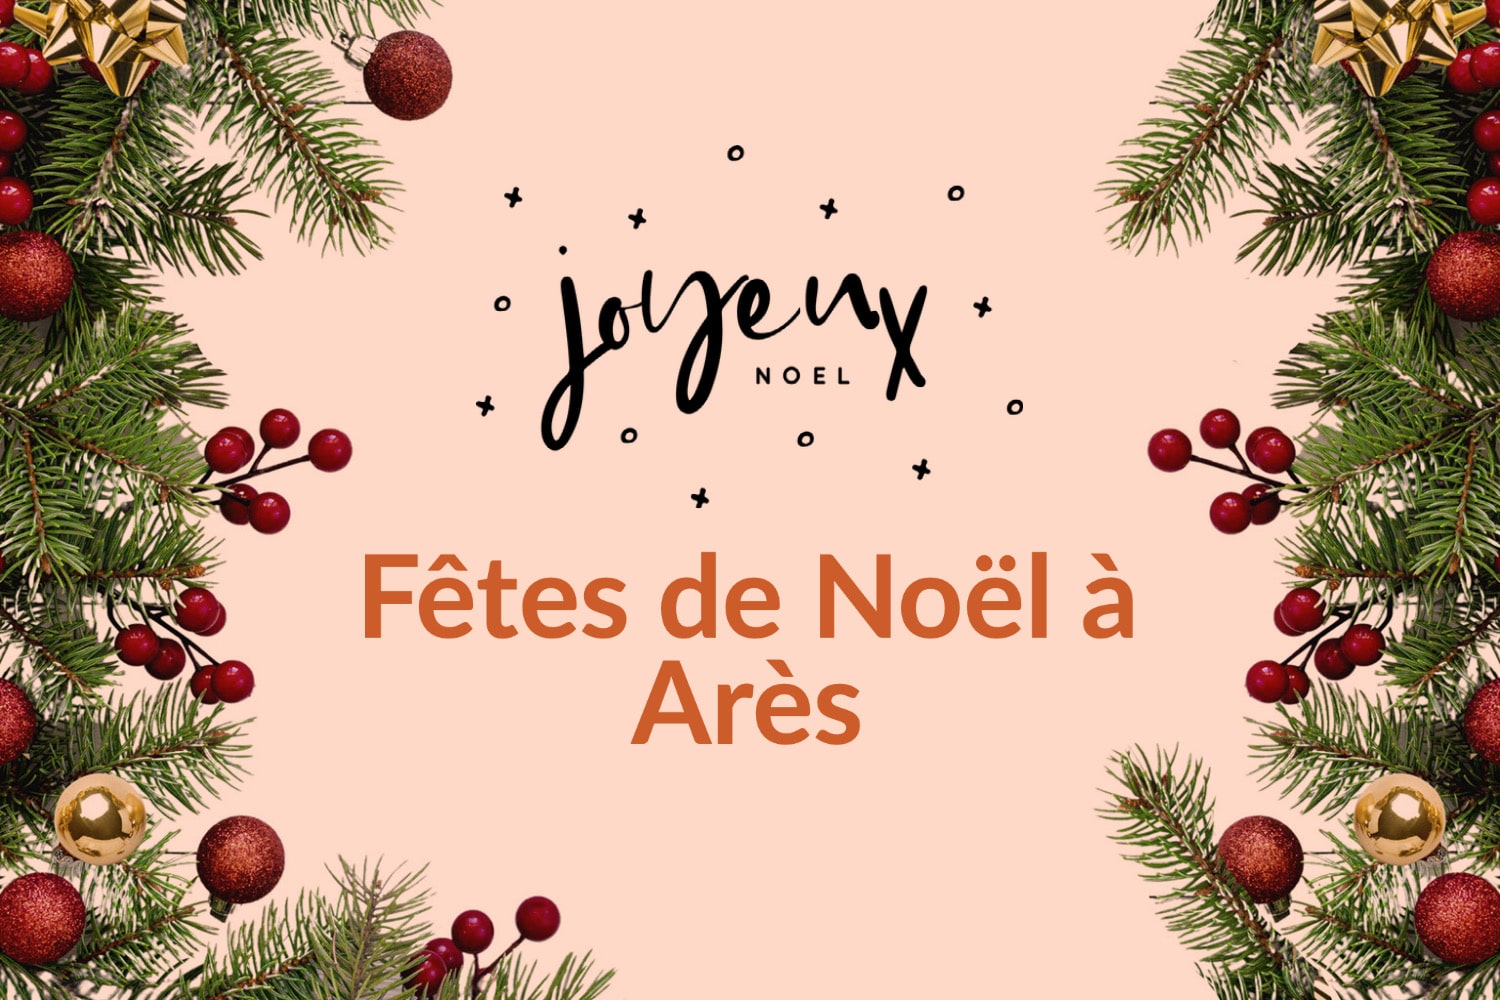 Marché et village de Noël à Arès le 4 décembre 2022 de 10h à 18h